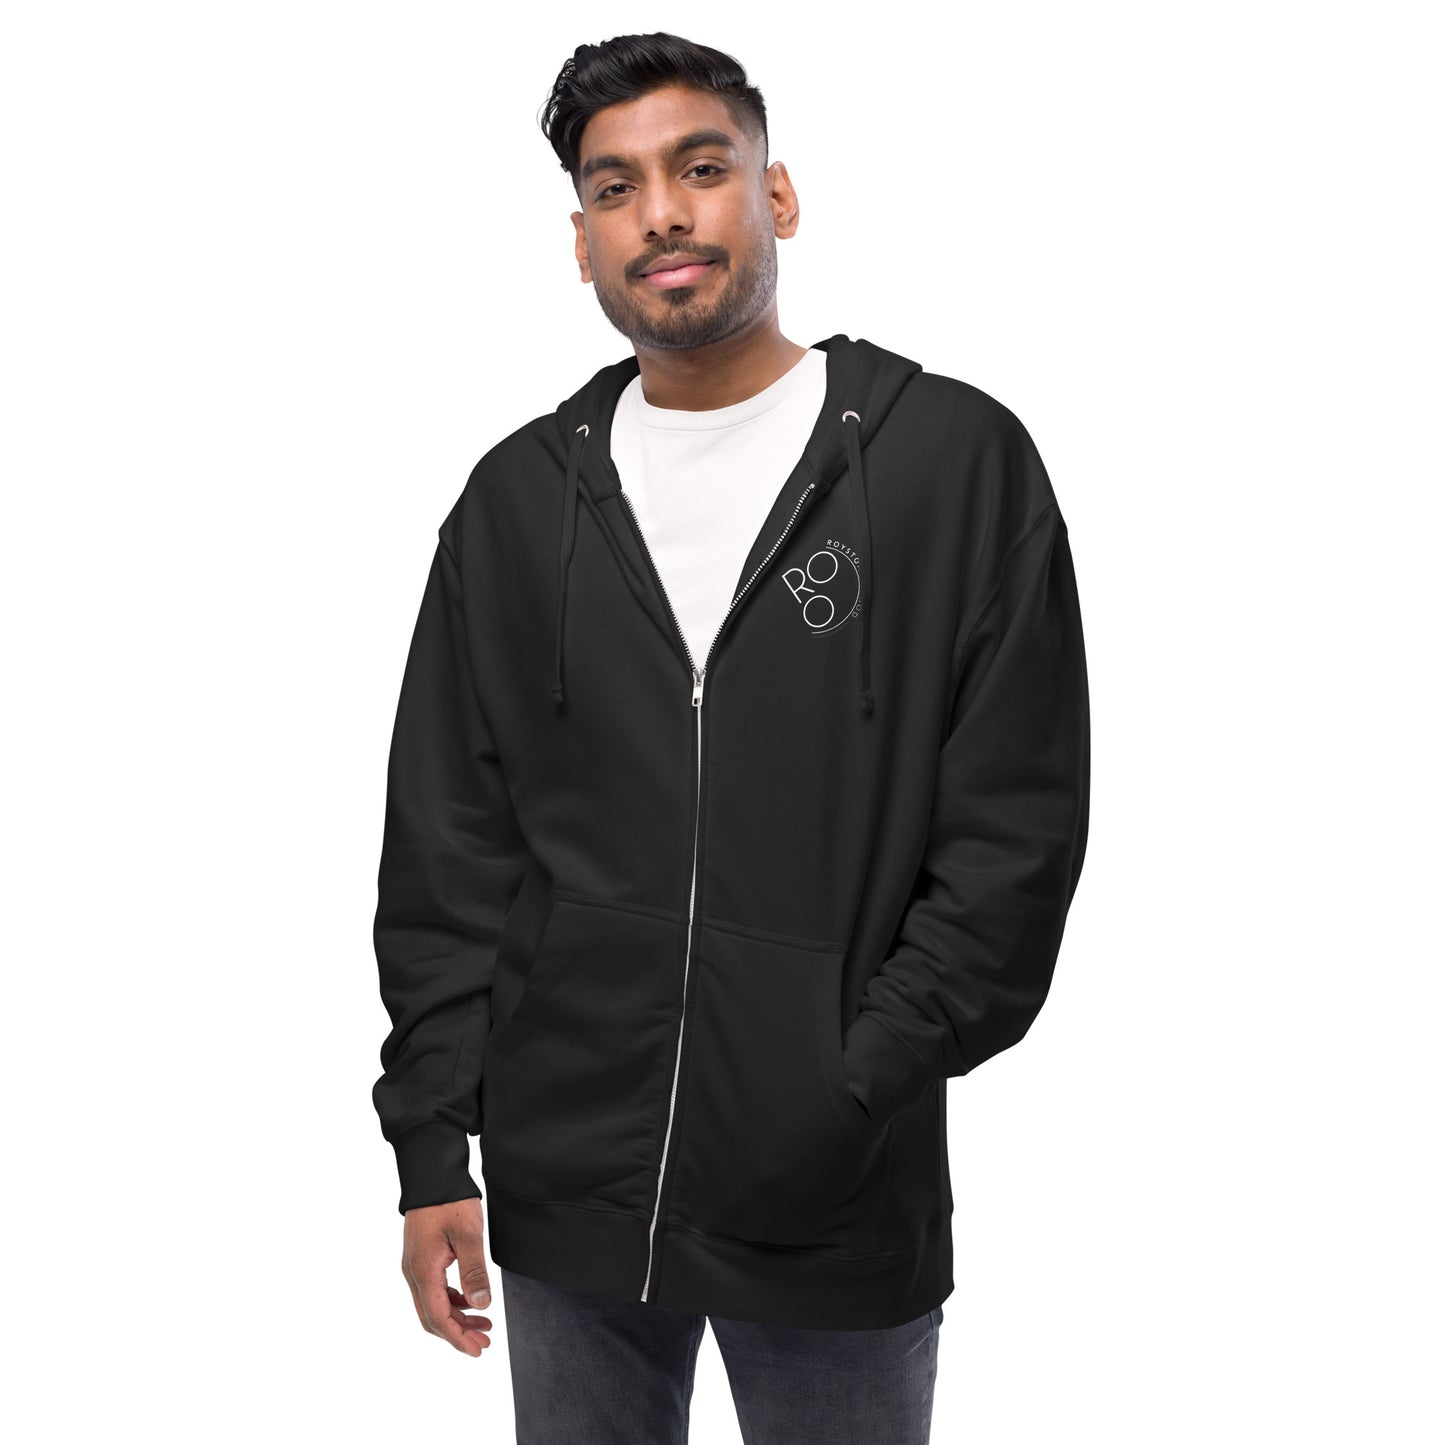 Fittest Over 50 Unisex fleece zip up hoodie